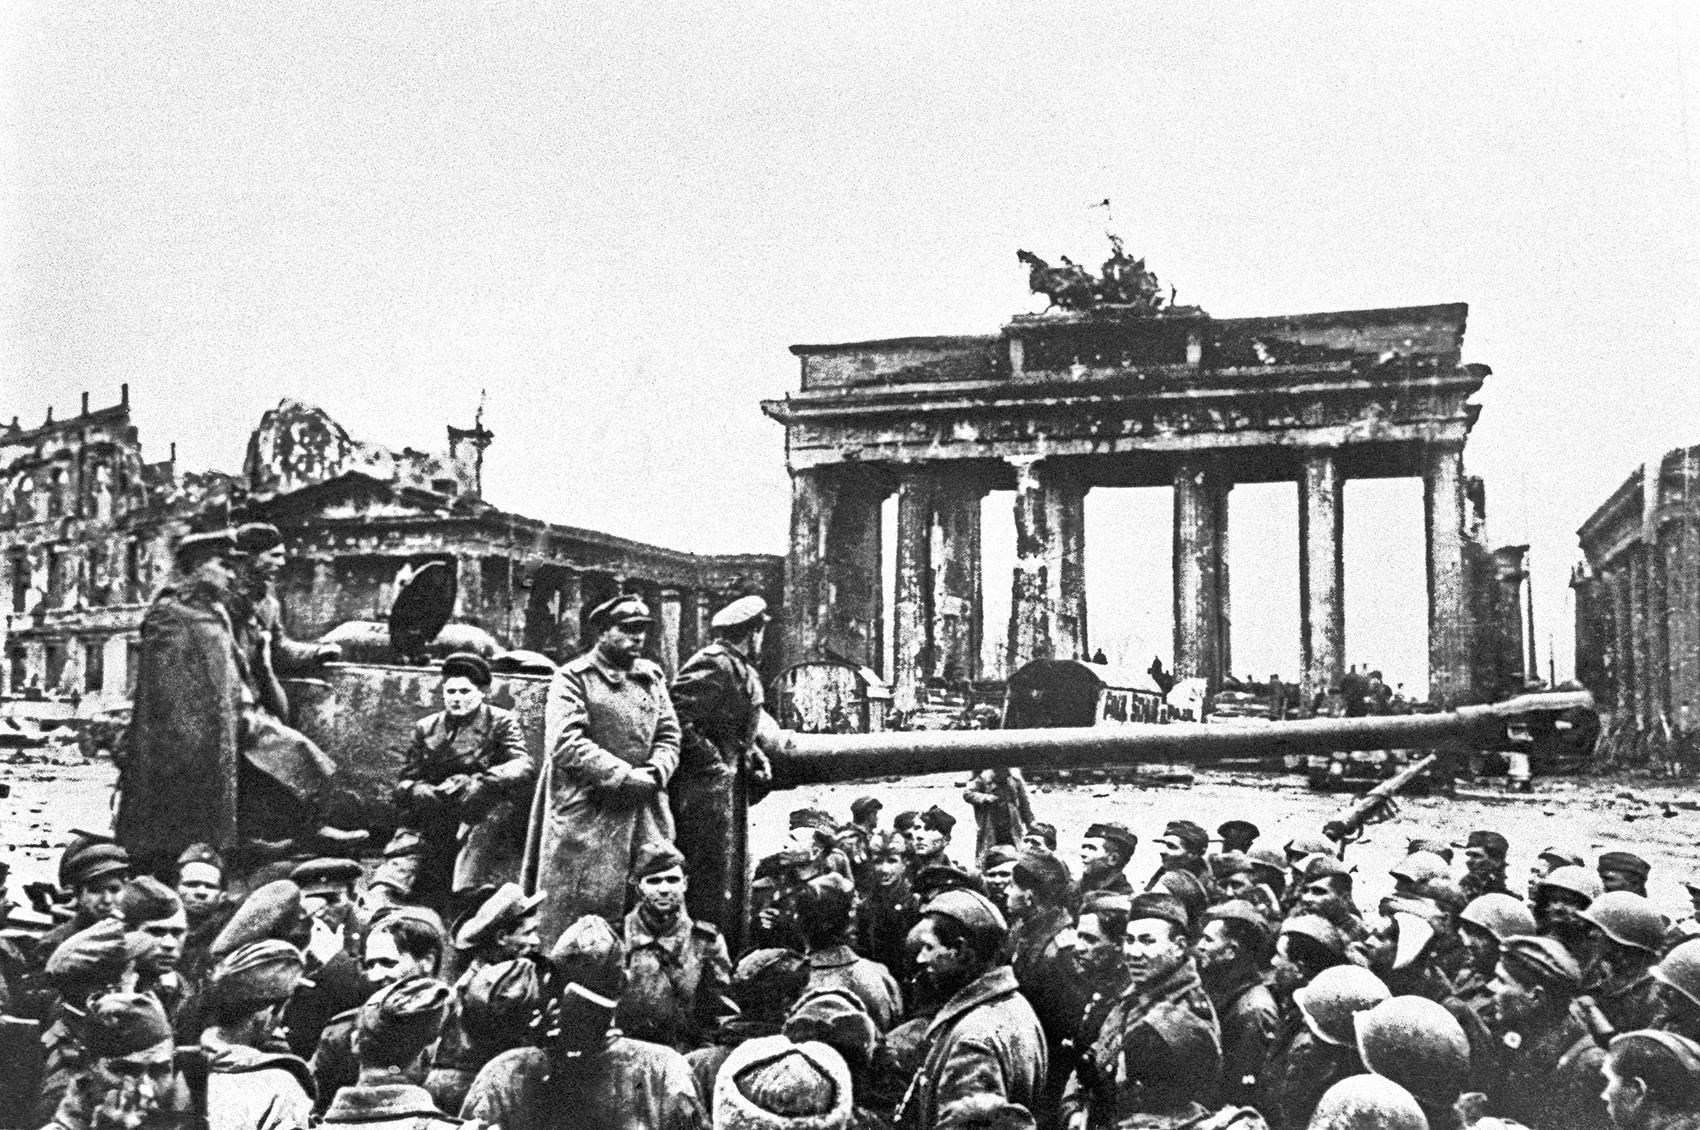 Foto rara das tropas soviéticas em Berlim, em maio de 1945